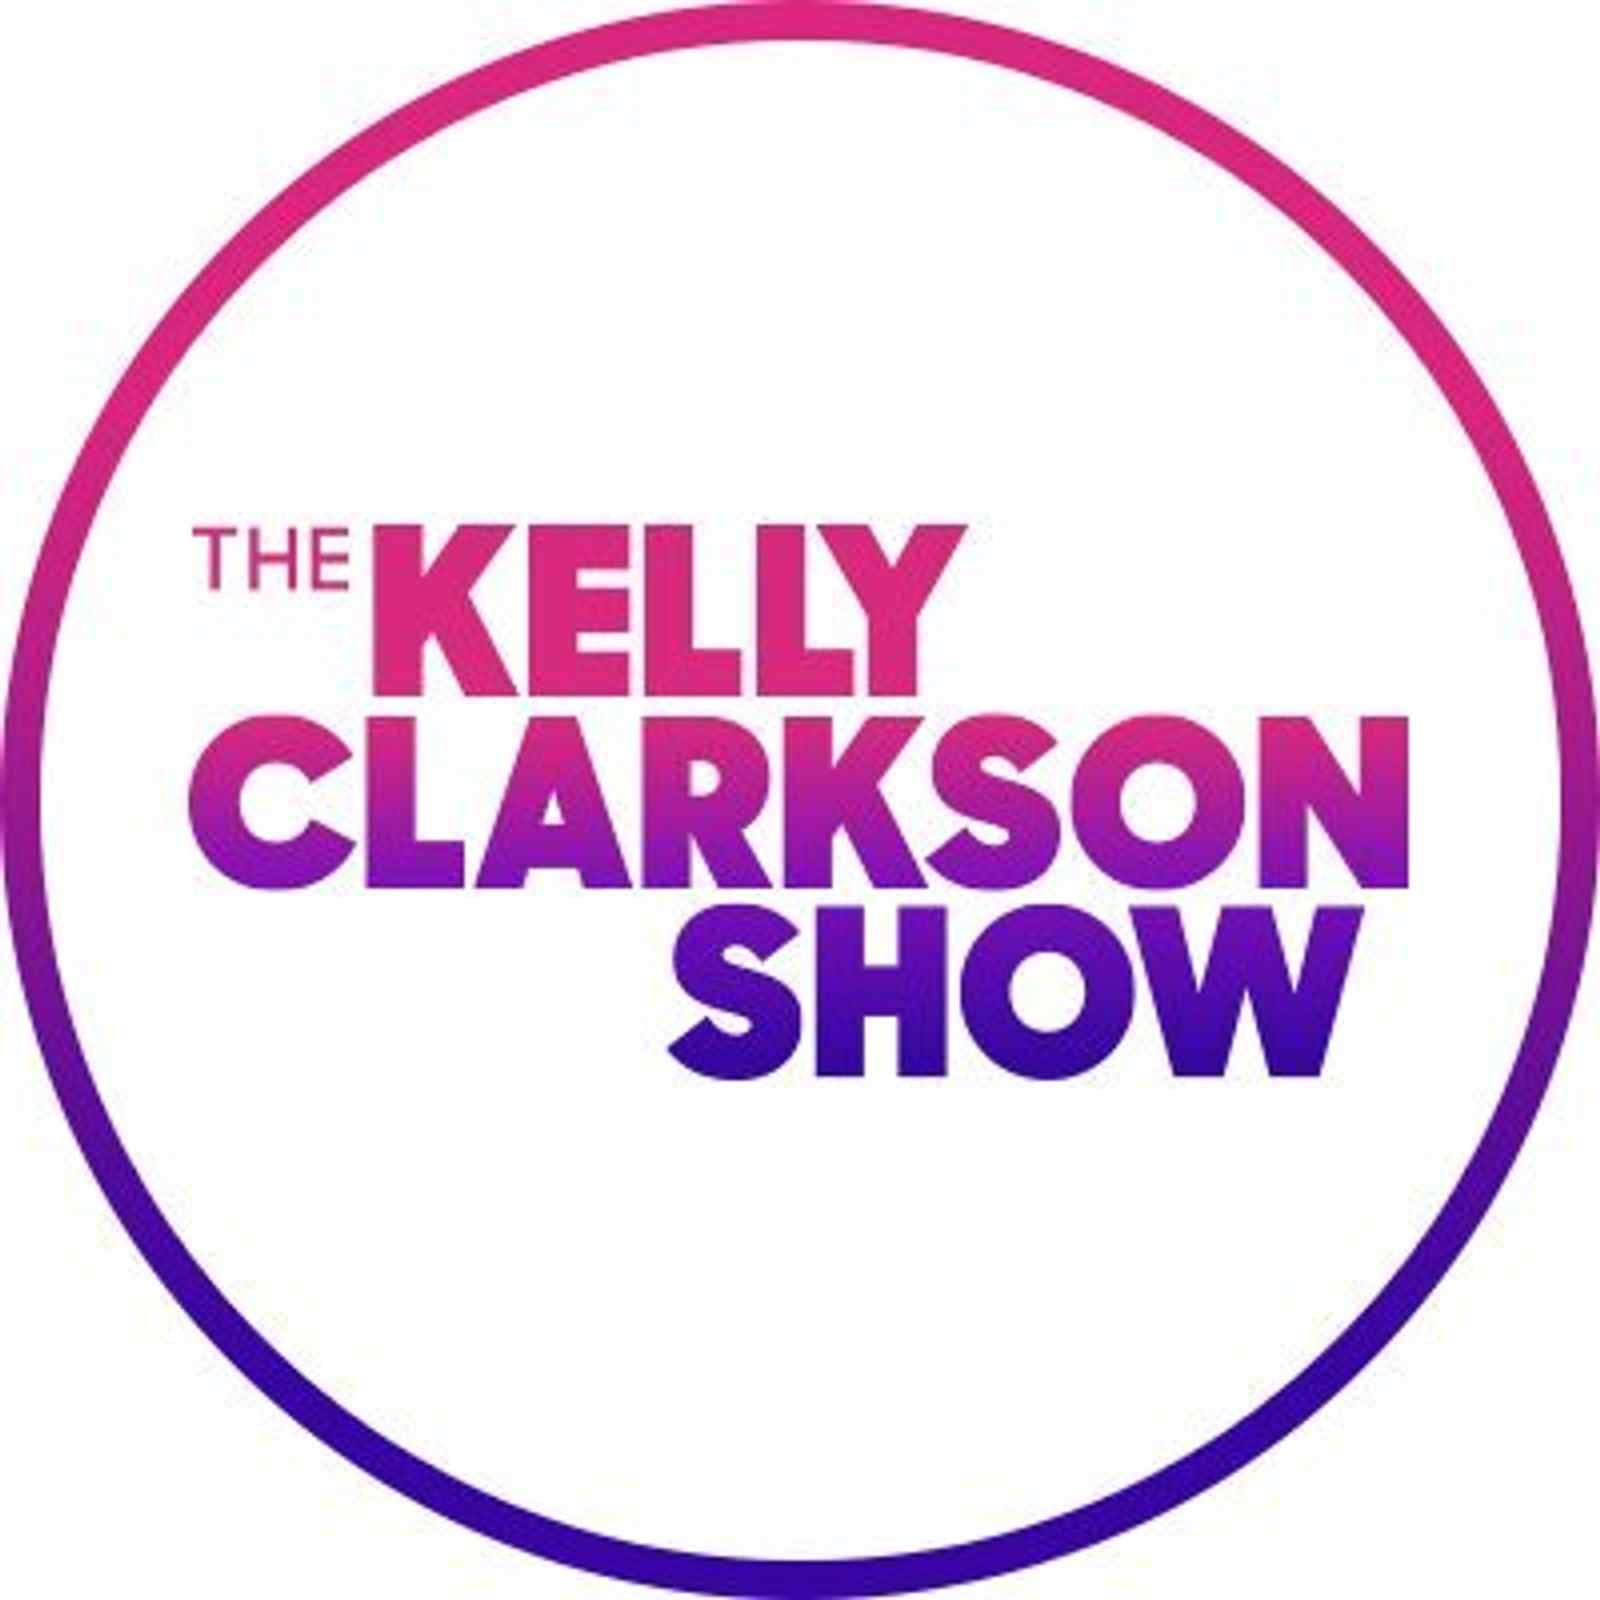 The Kelly Clarkson Show: Blake Shelton